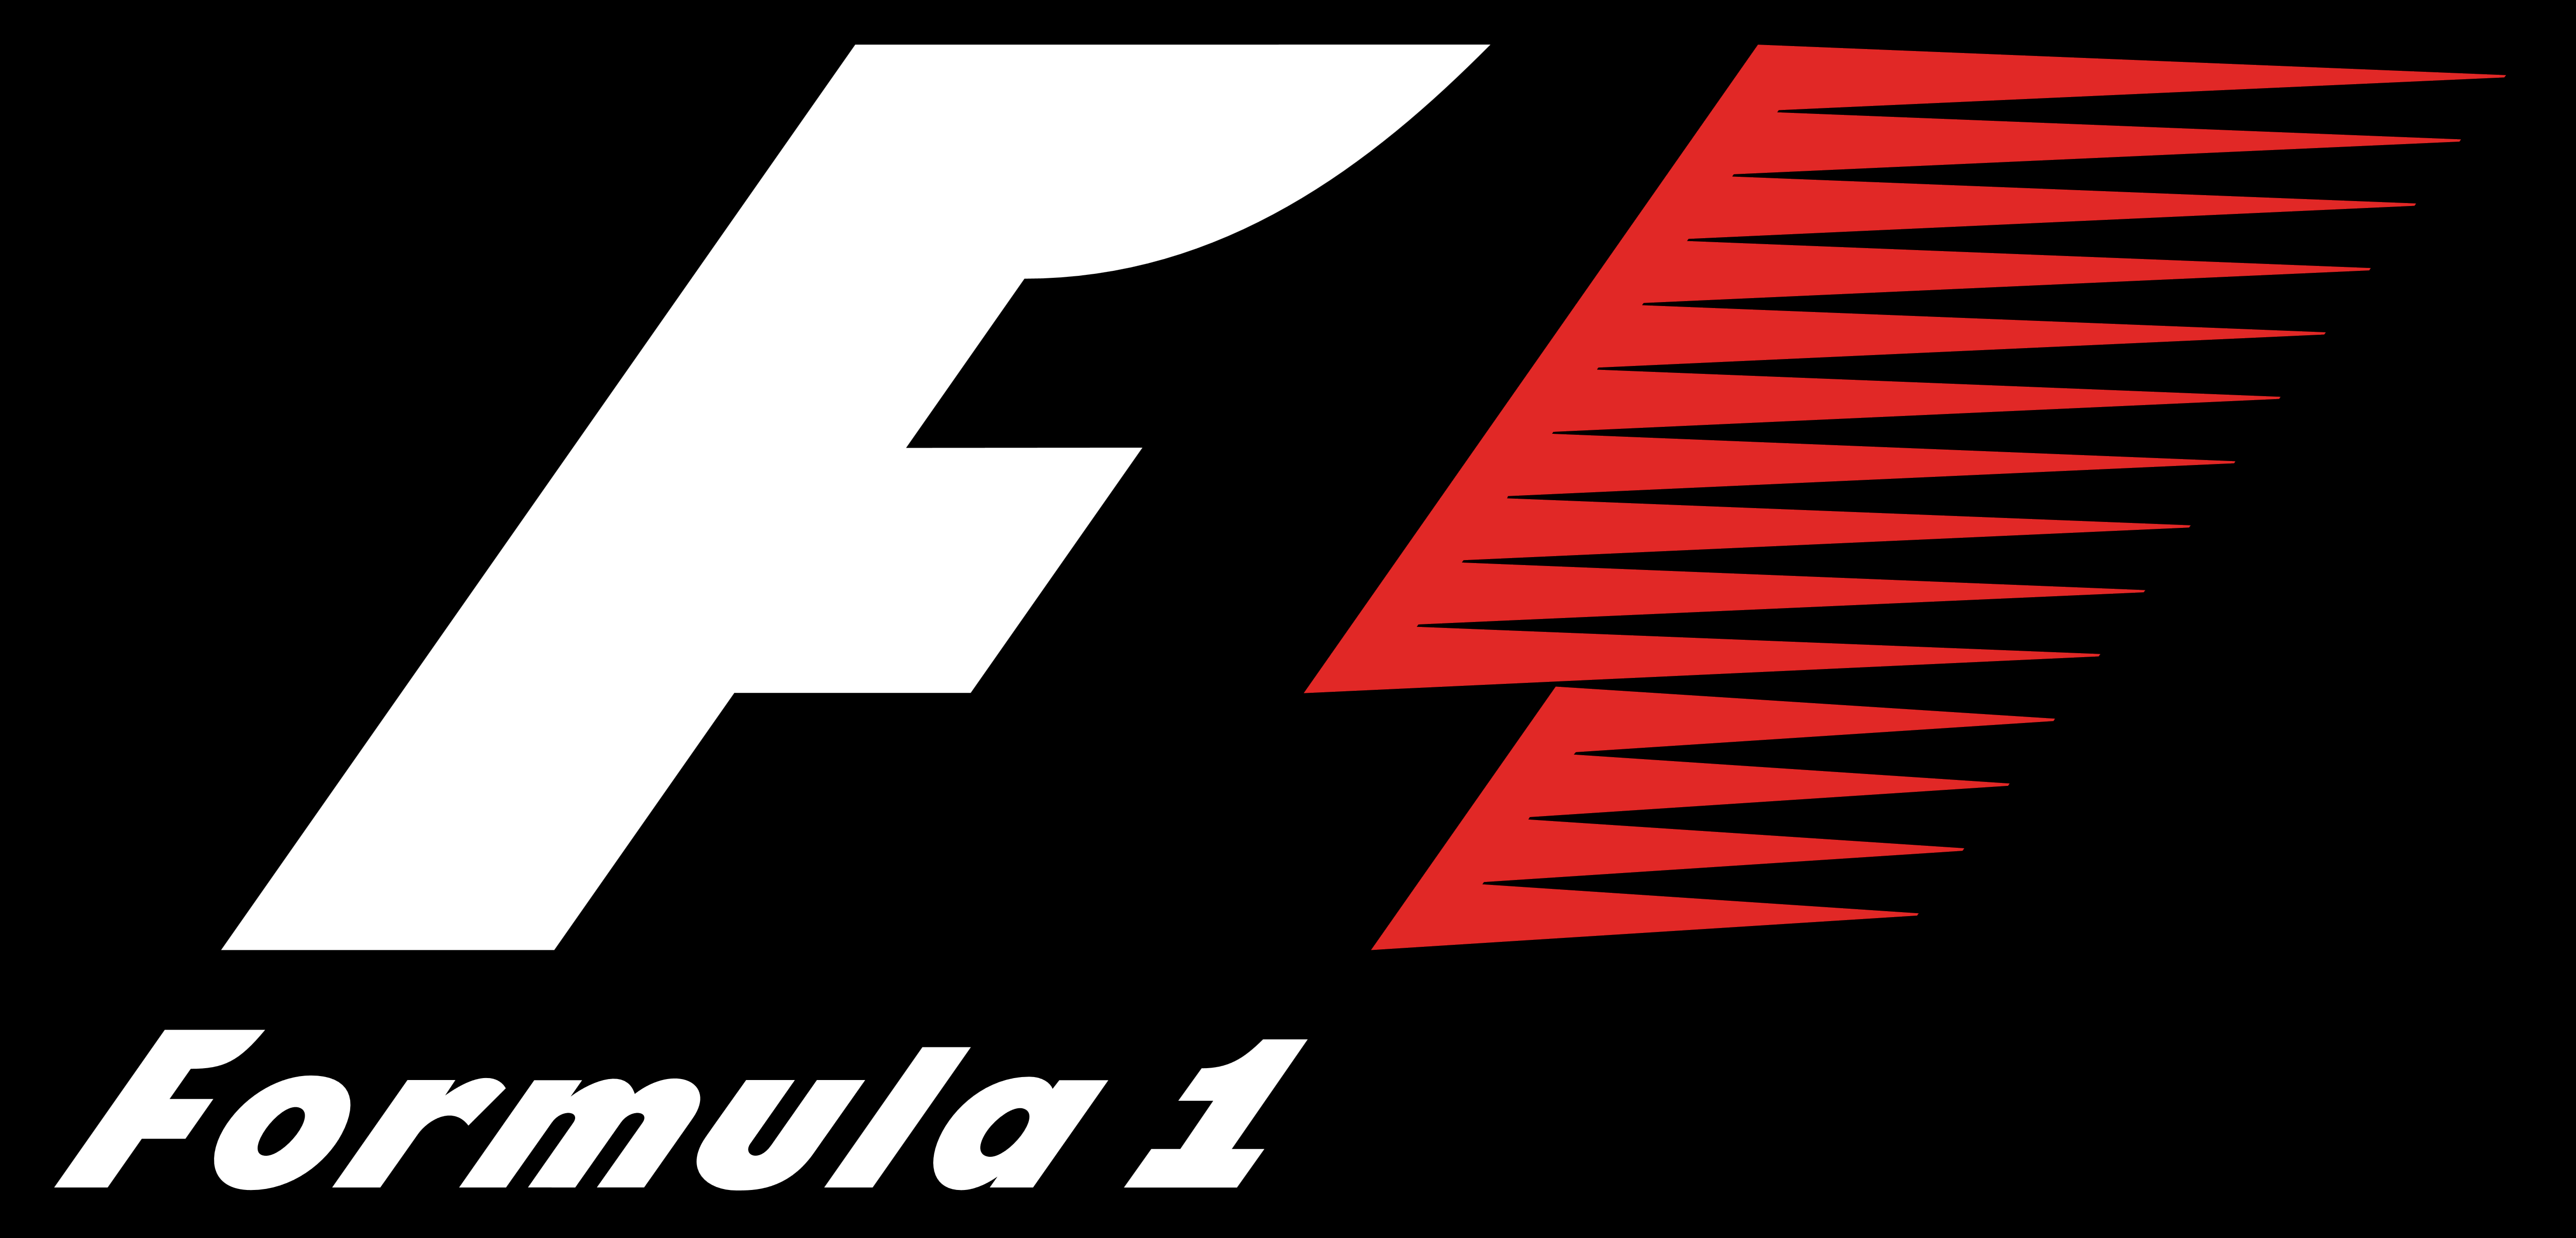 [Imagen: F1_Formula_1_logo_black_background.png]